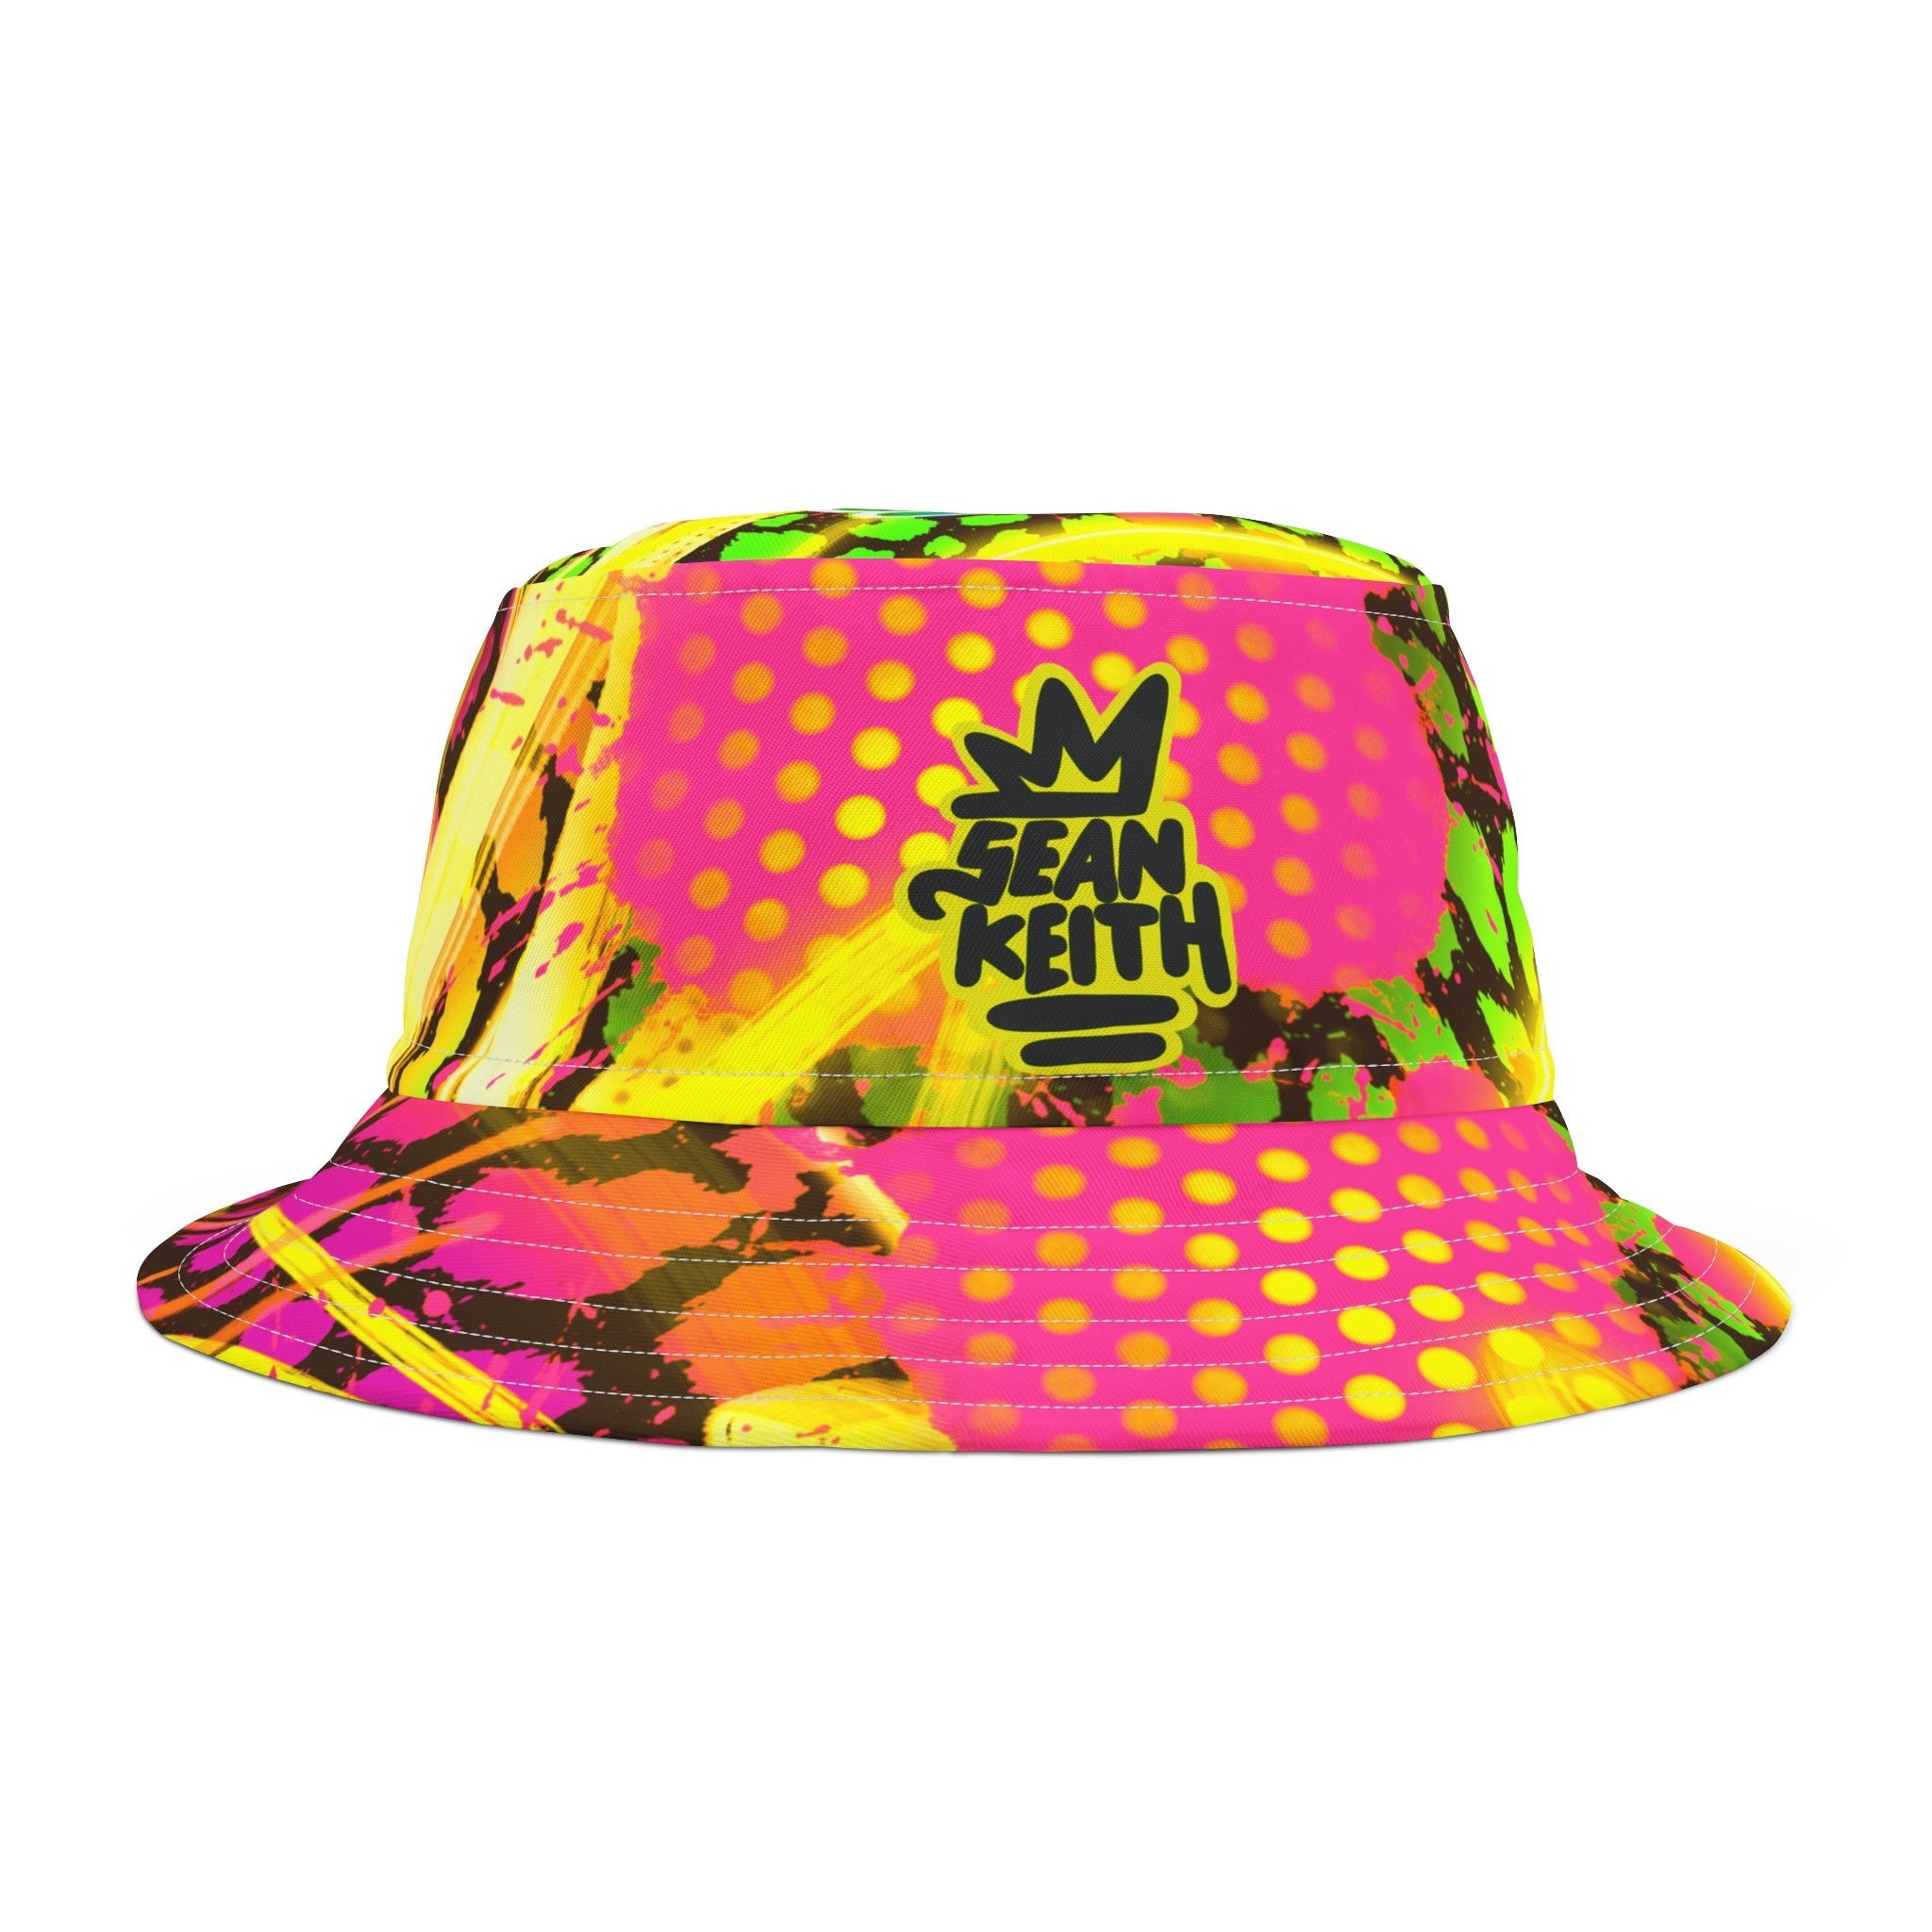 Sean Keith pop art Bucket Hat - Sean Keith Art